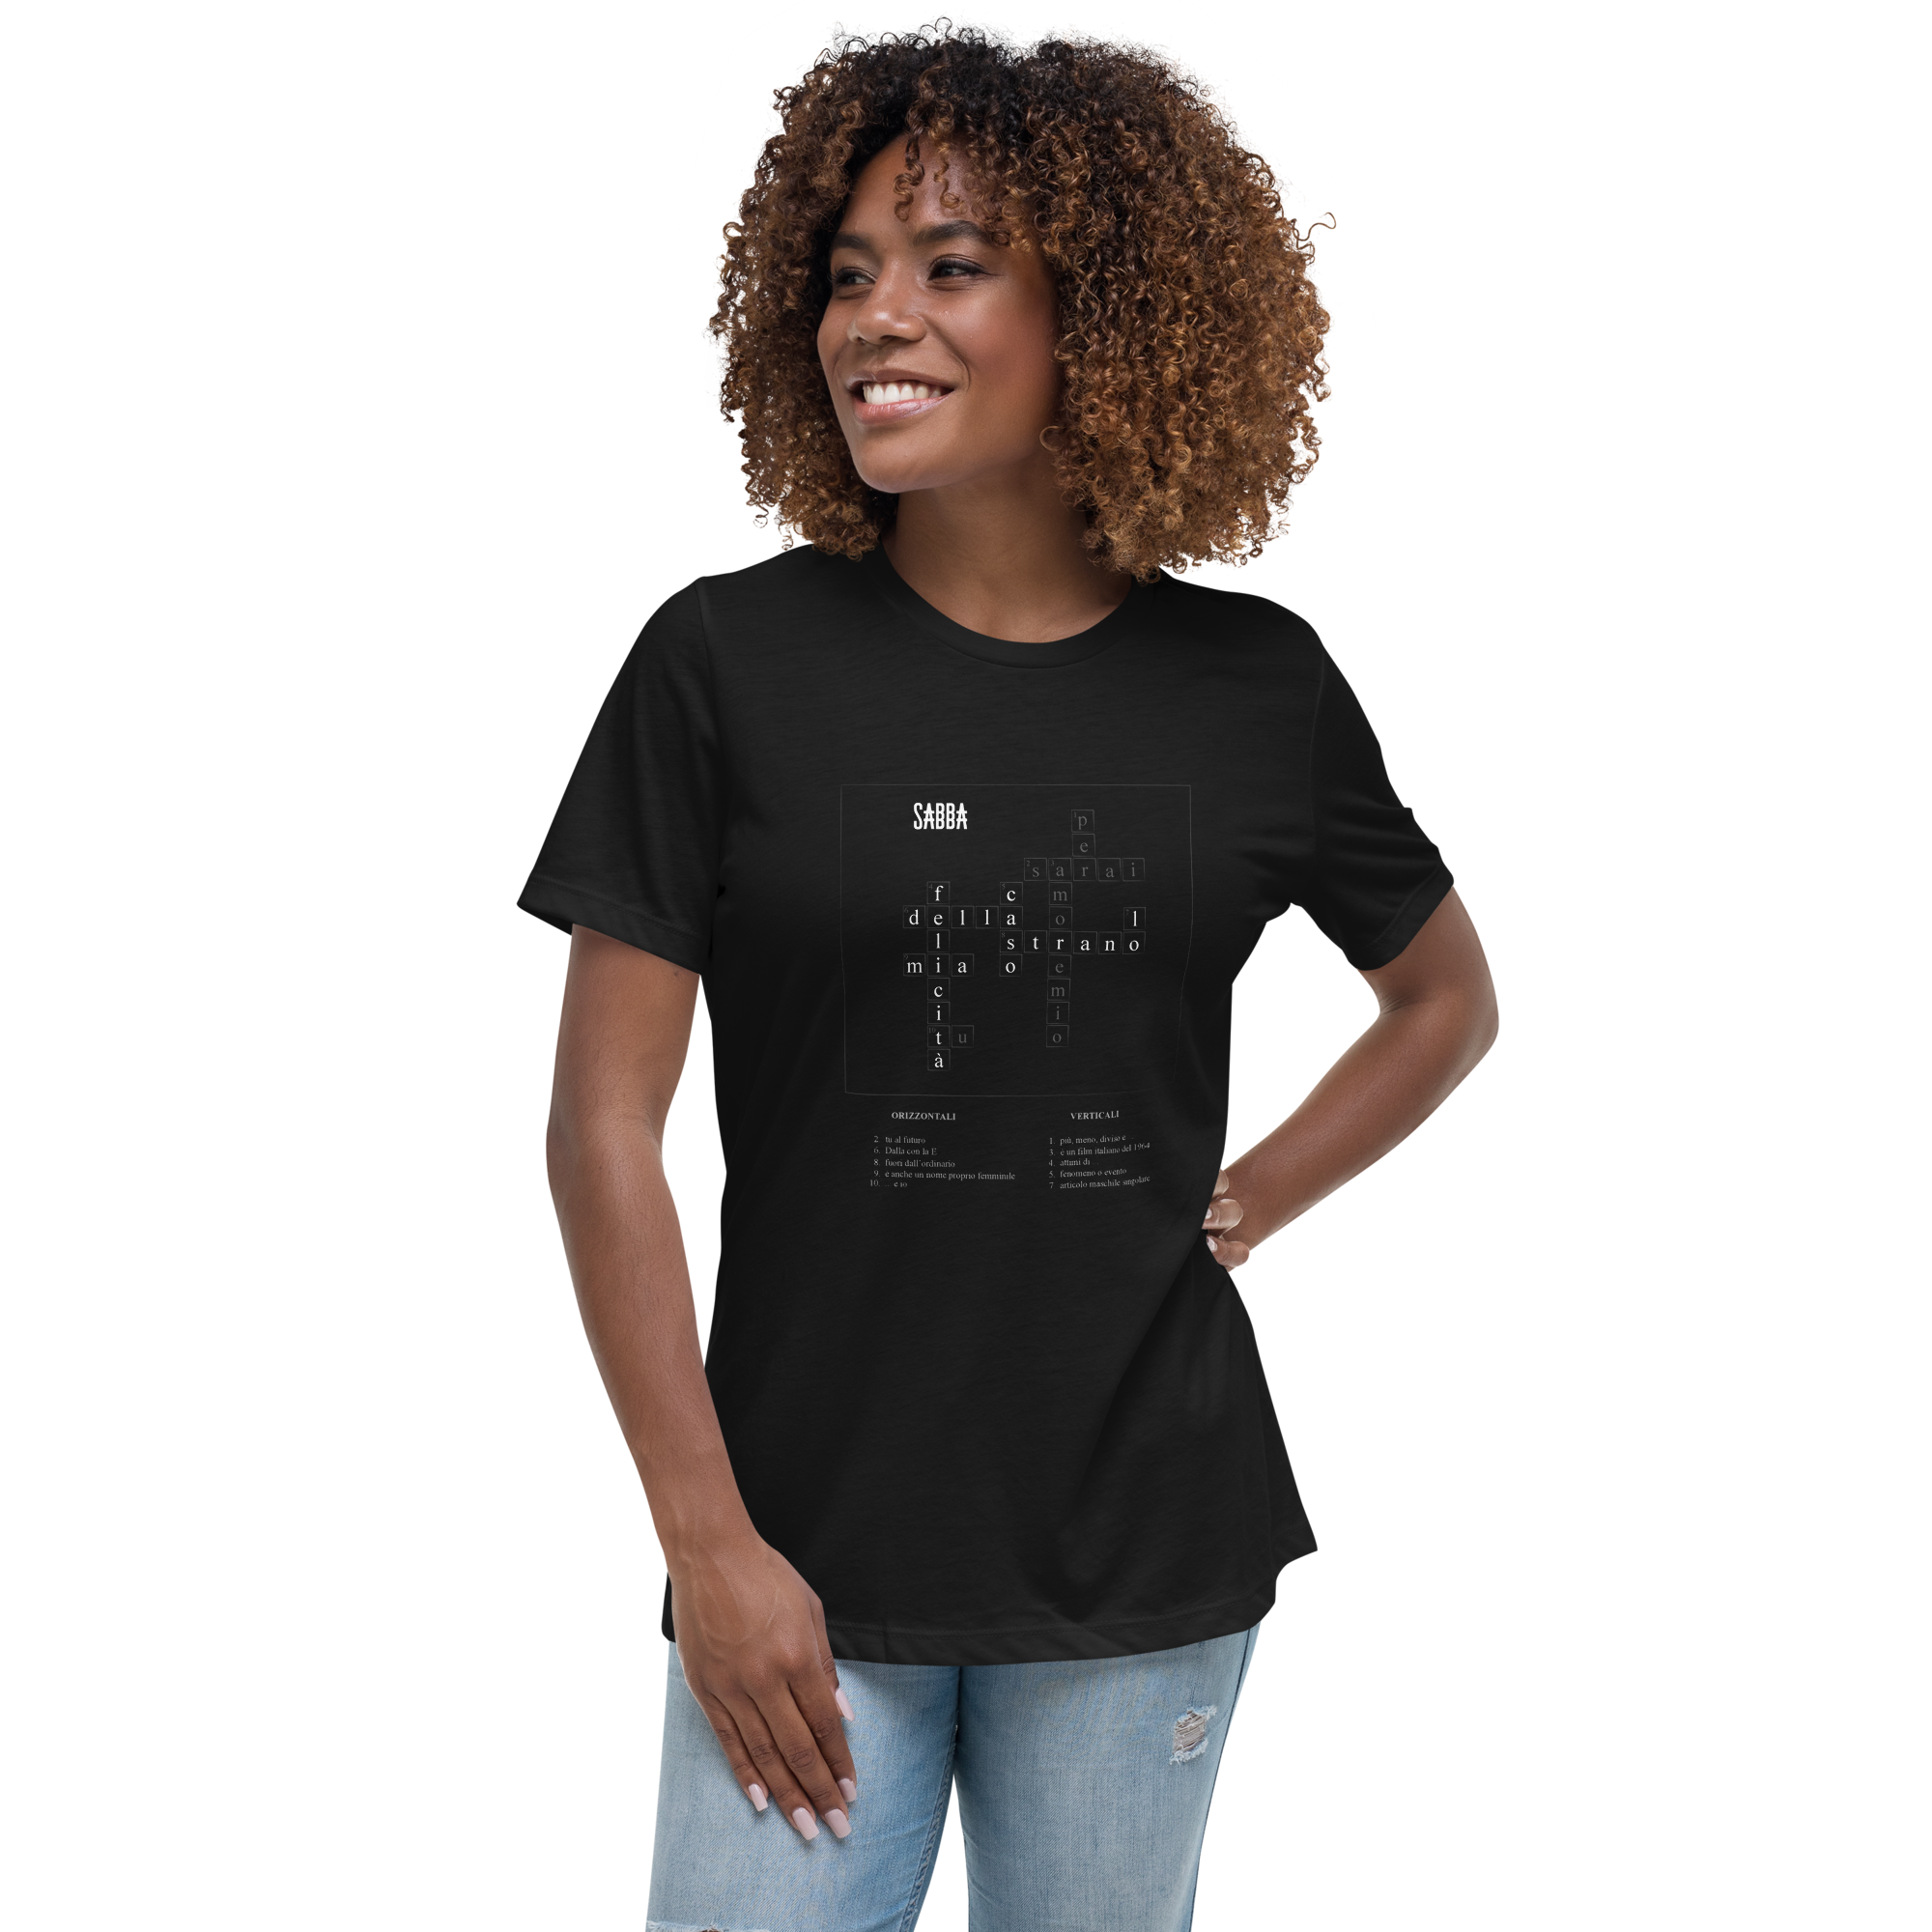 LO STRANO CASO - women's t-shirt